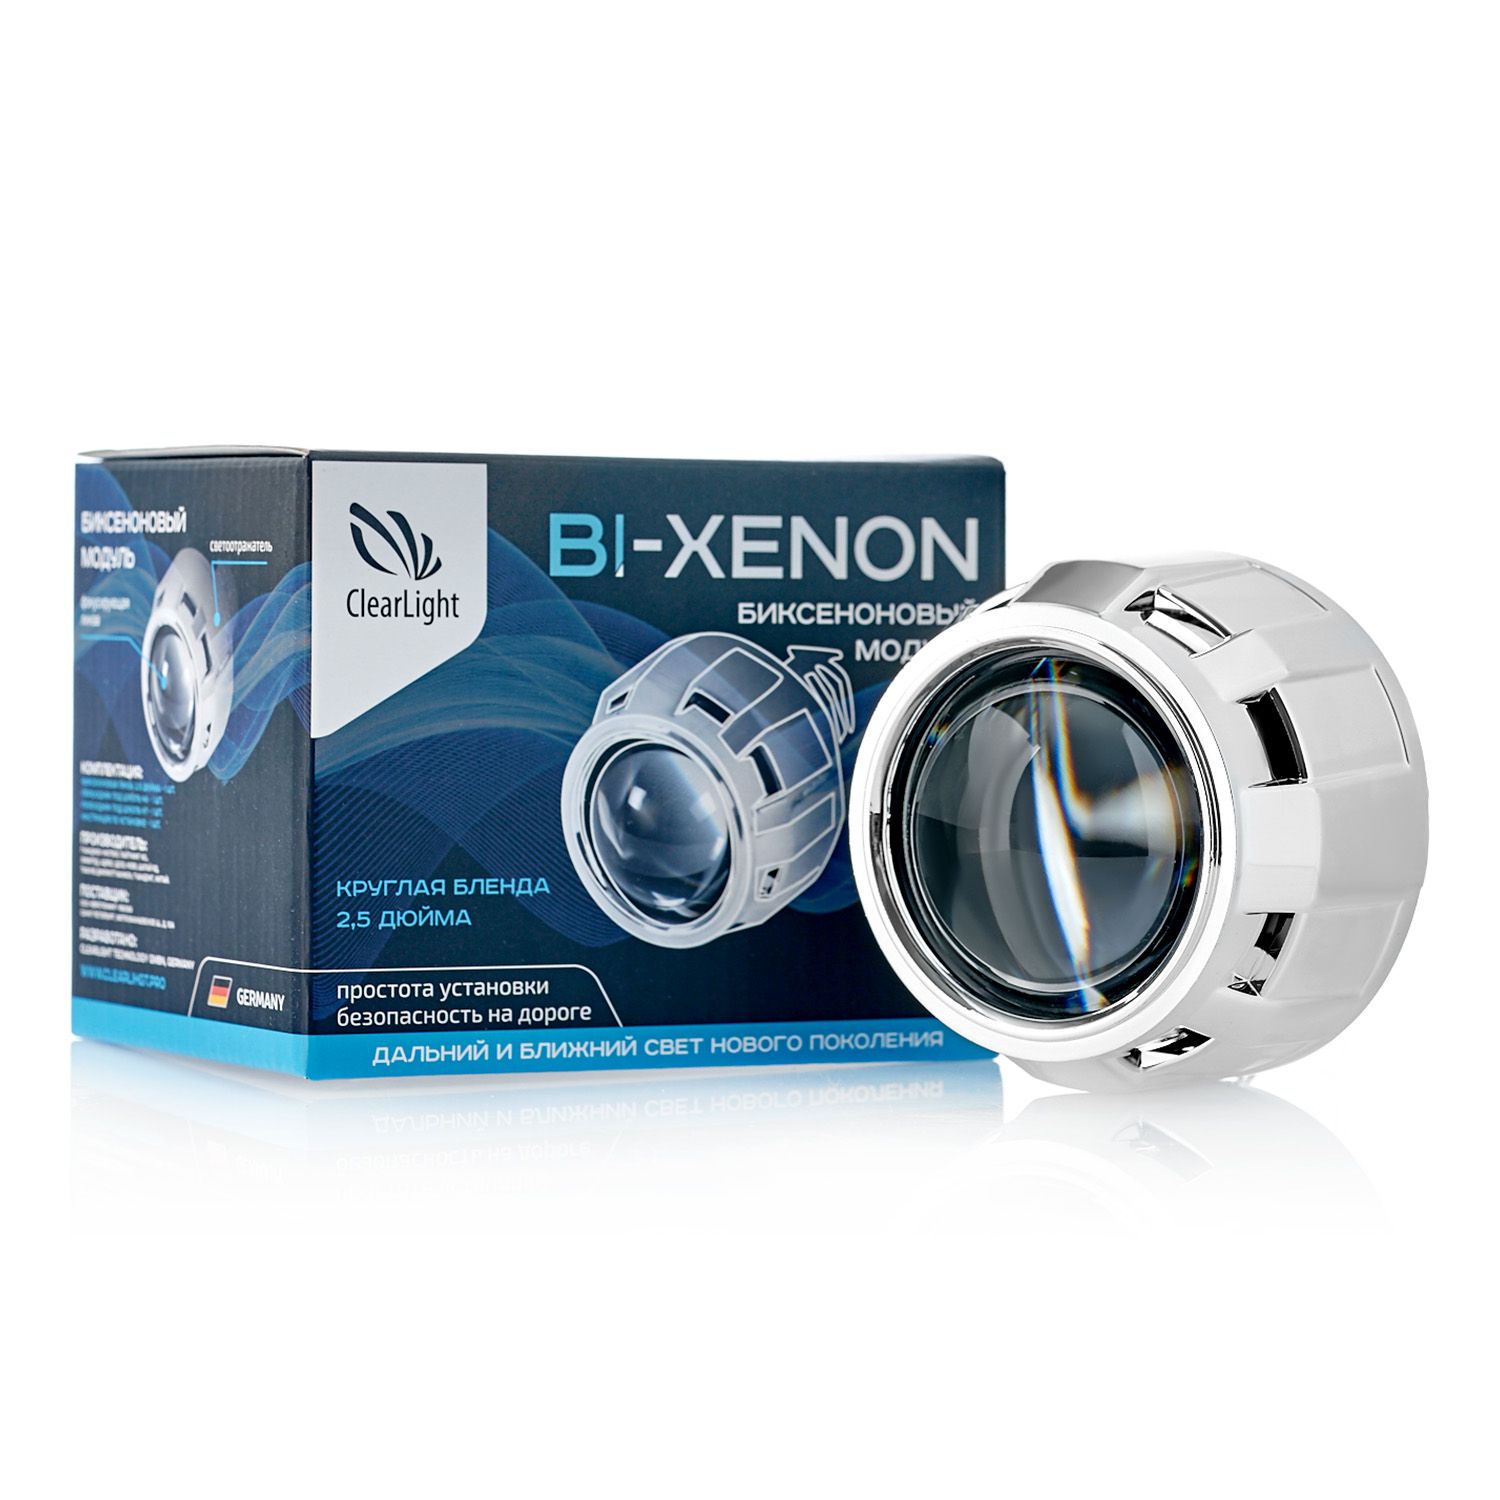 Биксеноновый модуль Clearlight 2,5 под лампу H1 (H4/H7)